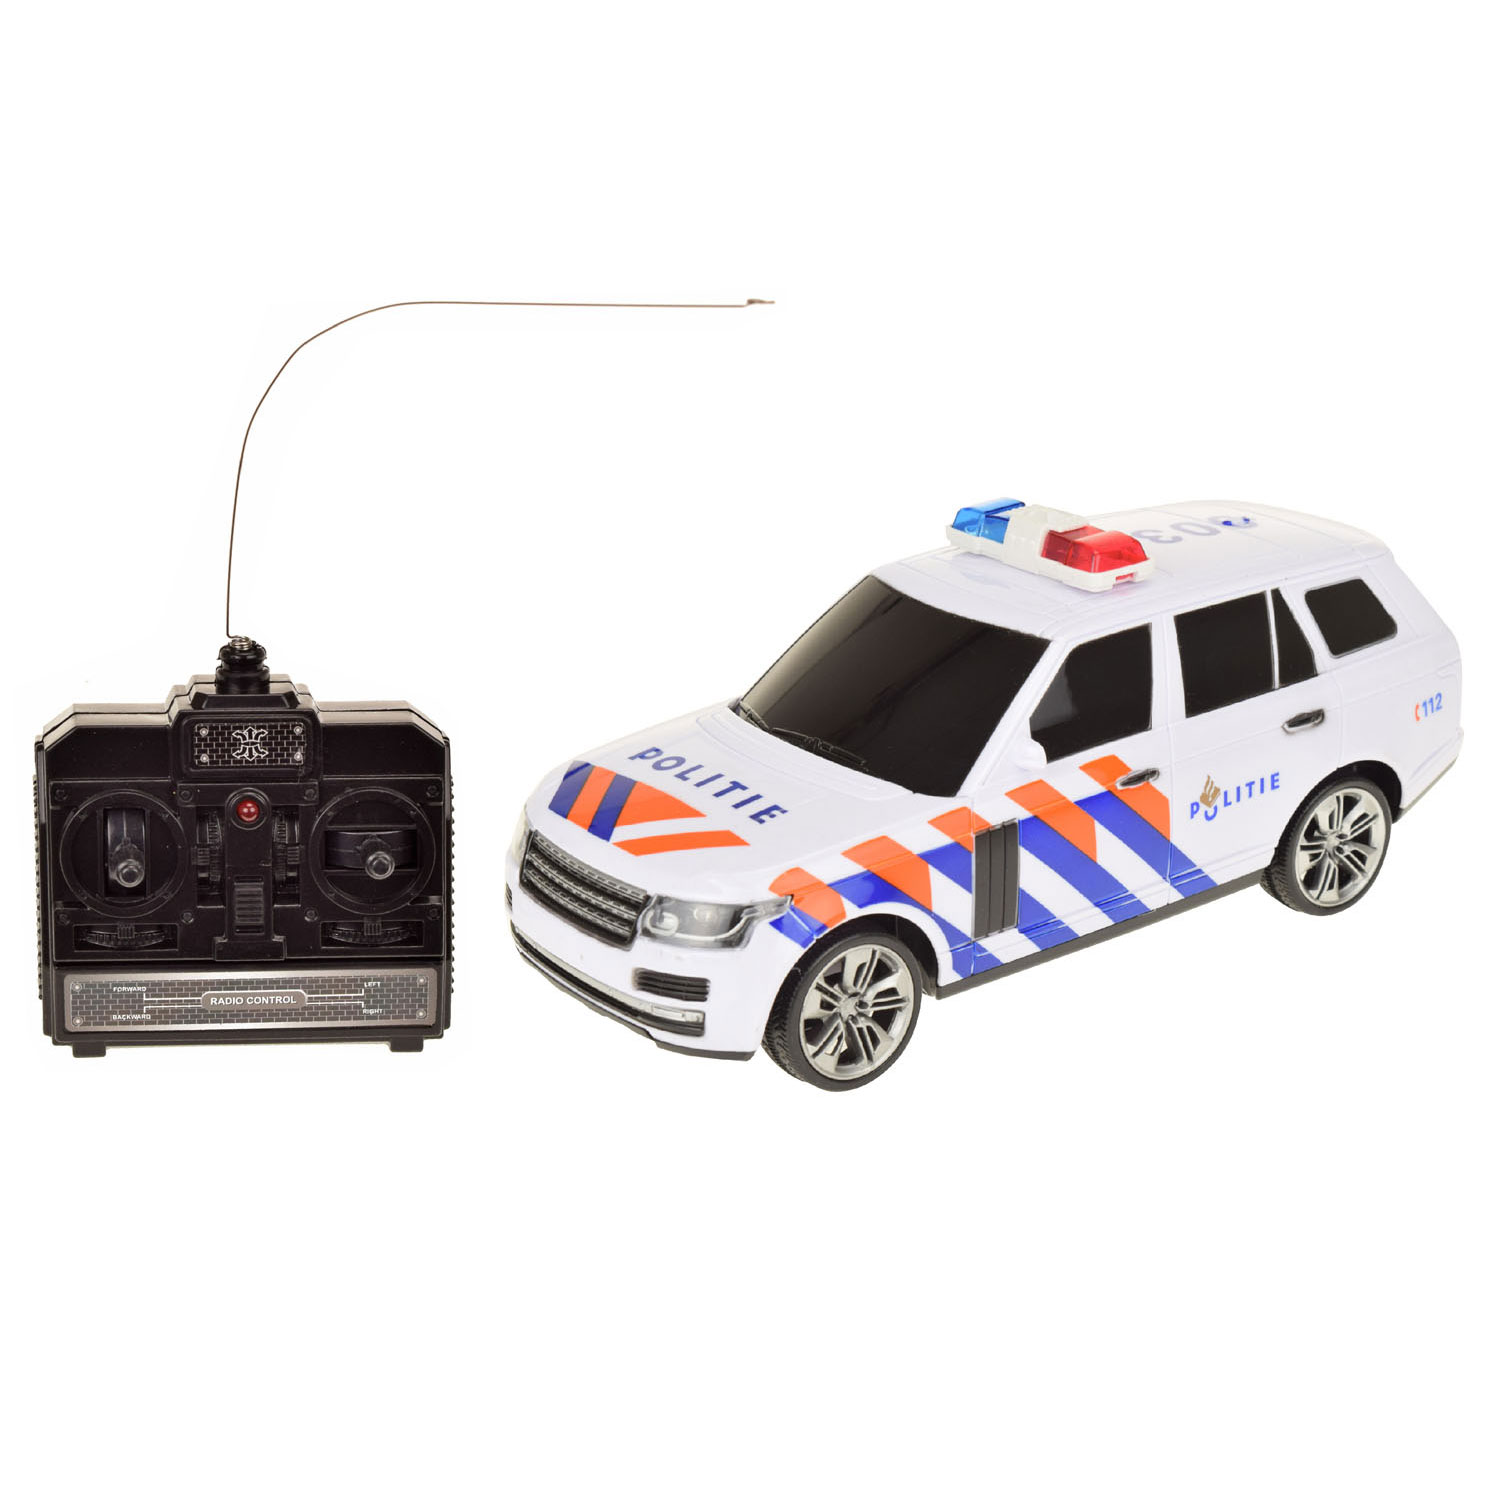 Polizeiauto RC mit Licht und Sound Funk Polizeiauto Funkfernbedienung 